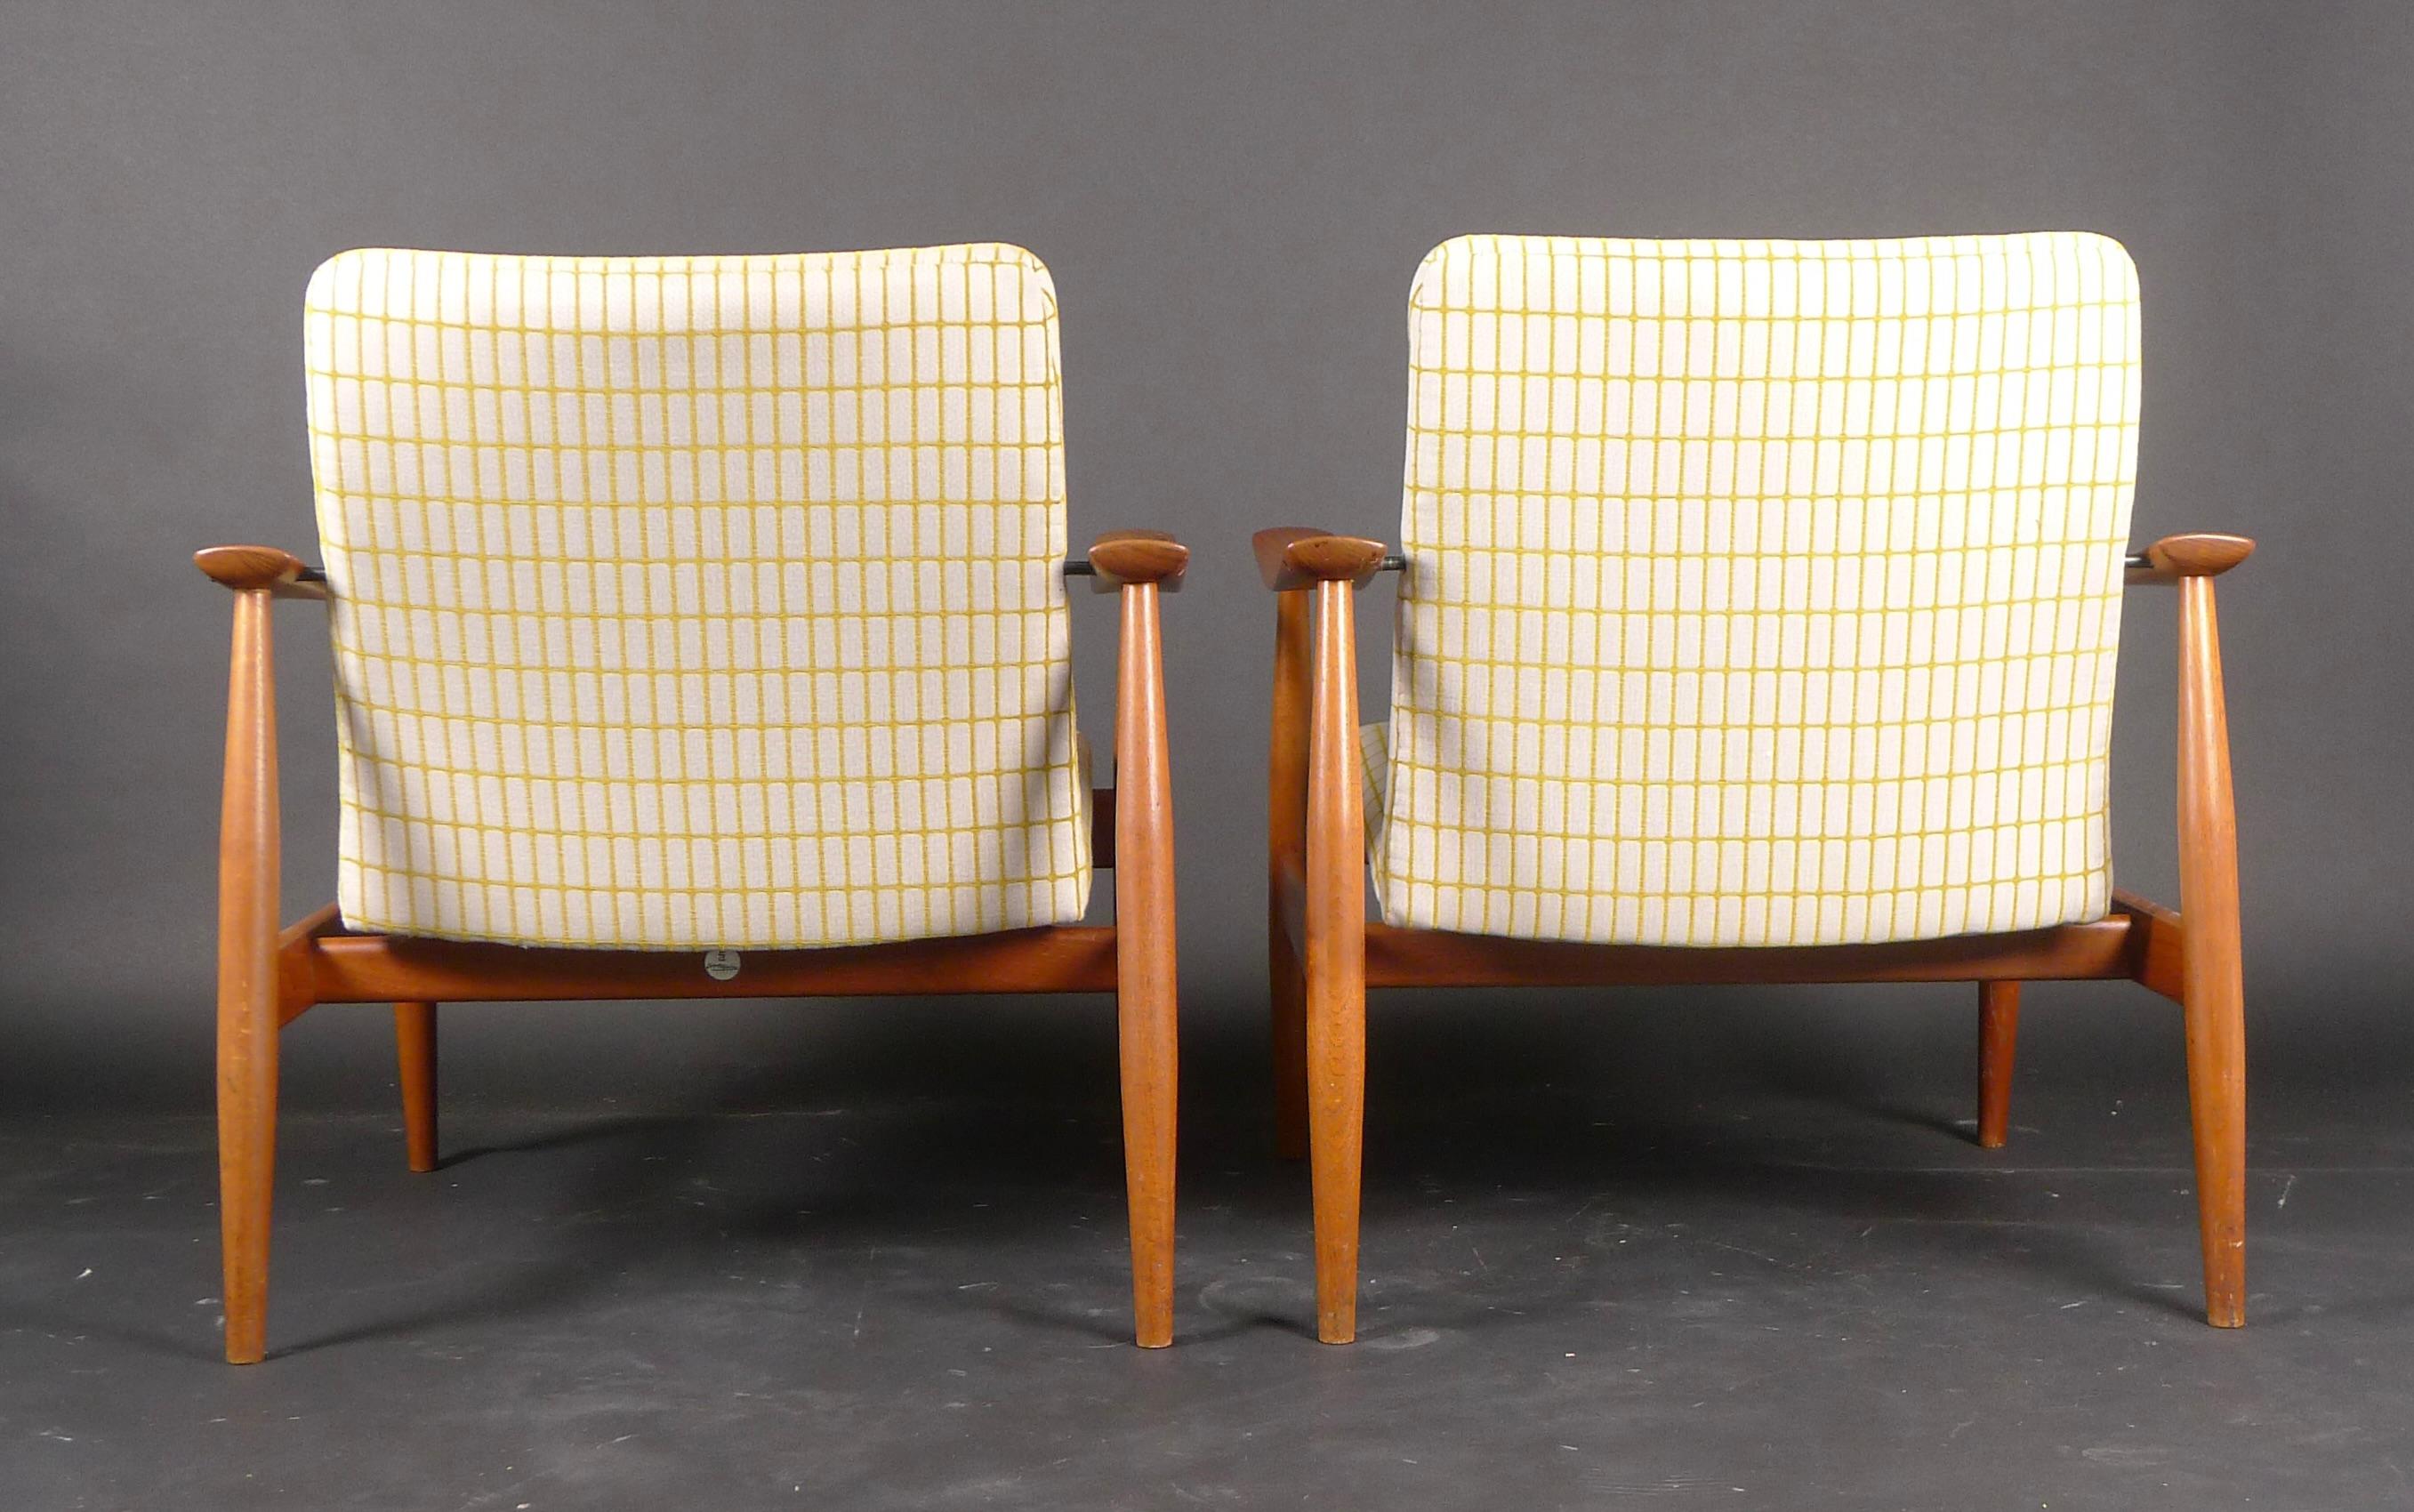 Finn Juhl, Pair of Teak Easy Chairs, Model Fd138, France & Son, 1959 For Sale 1